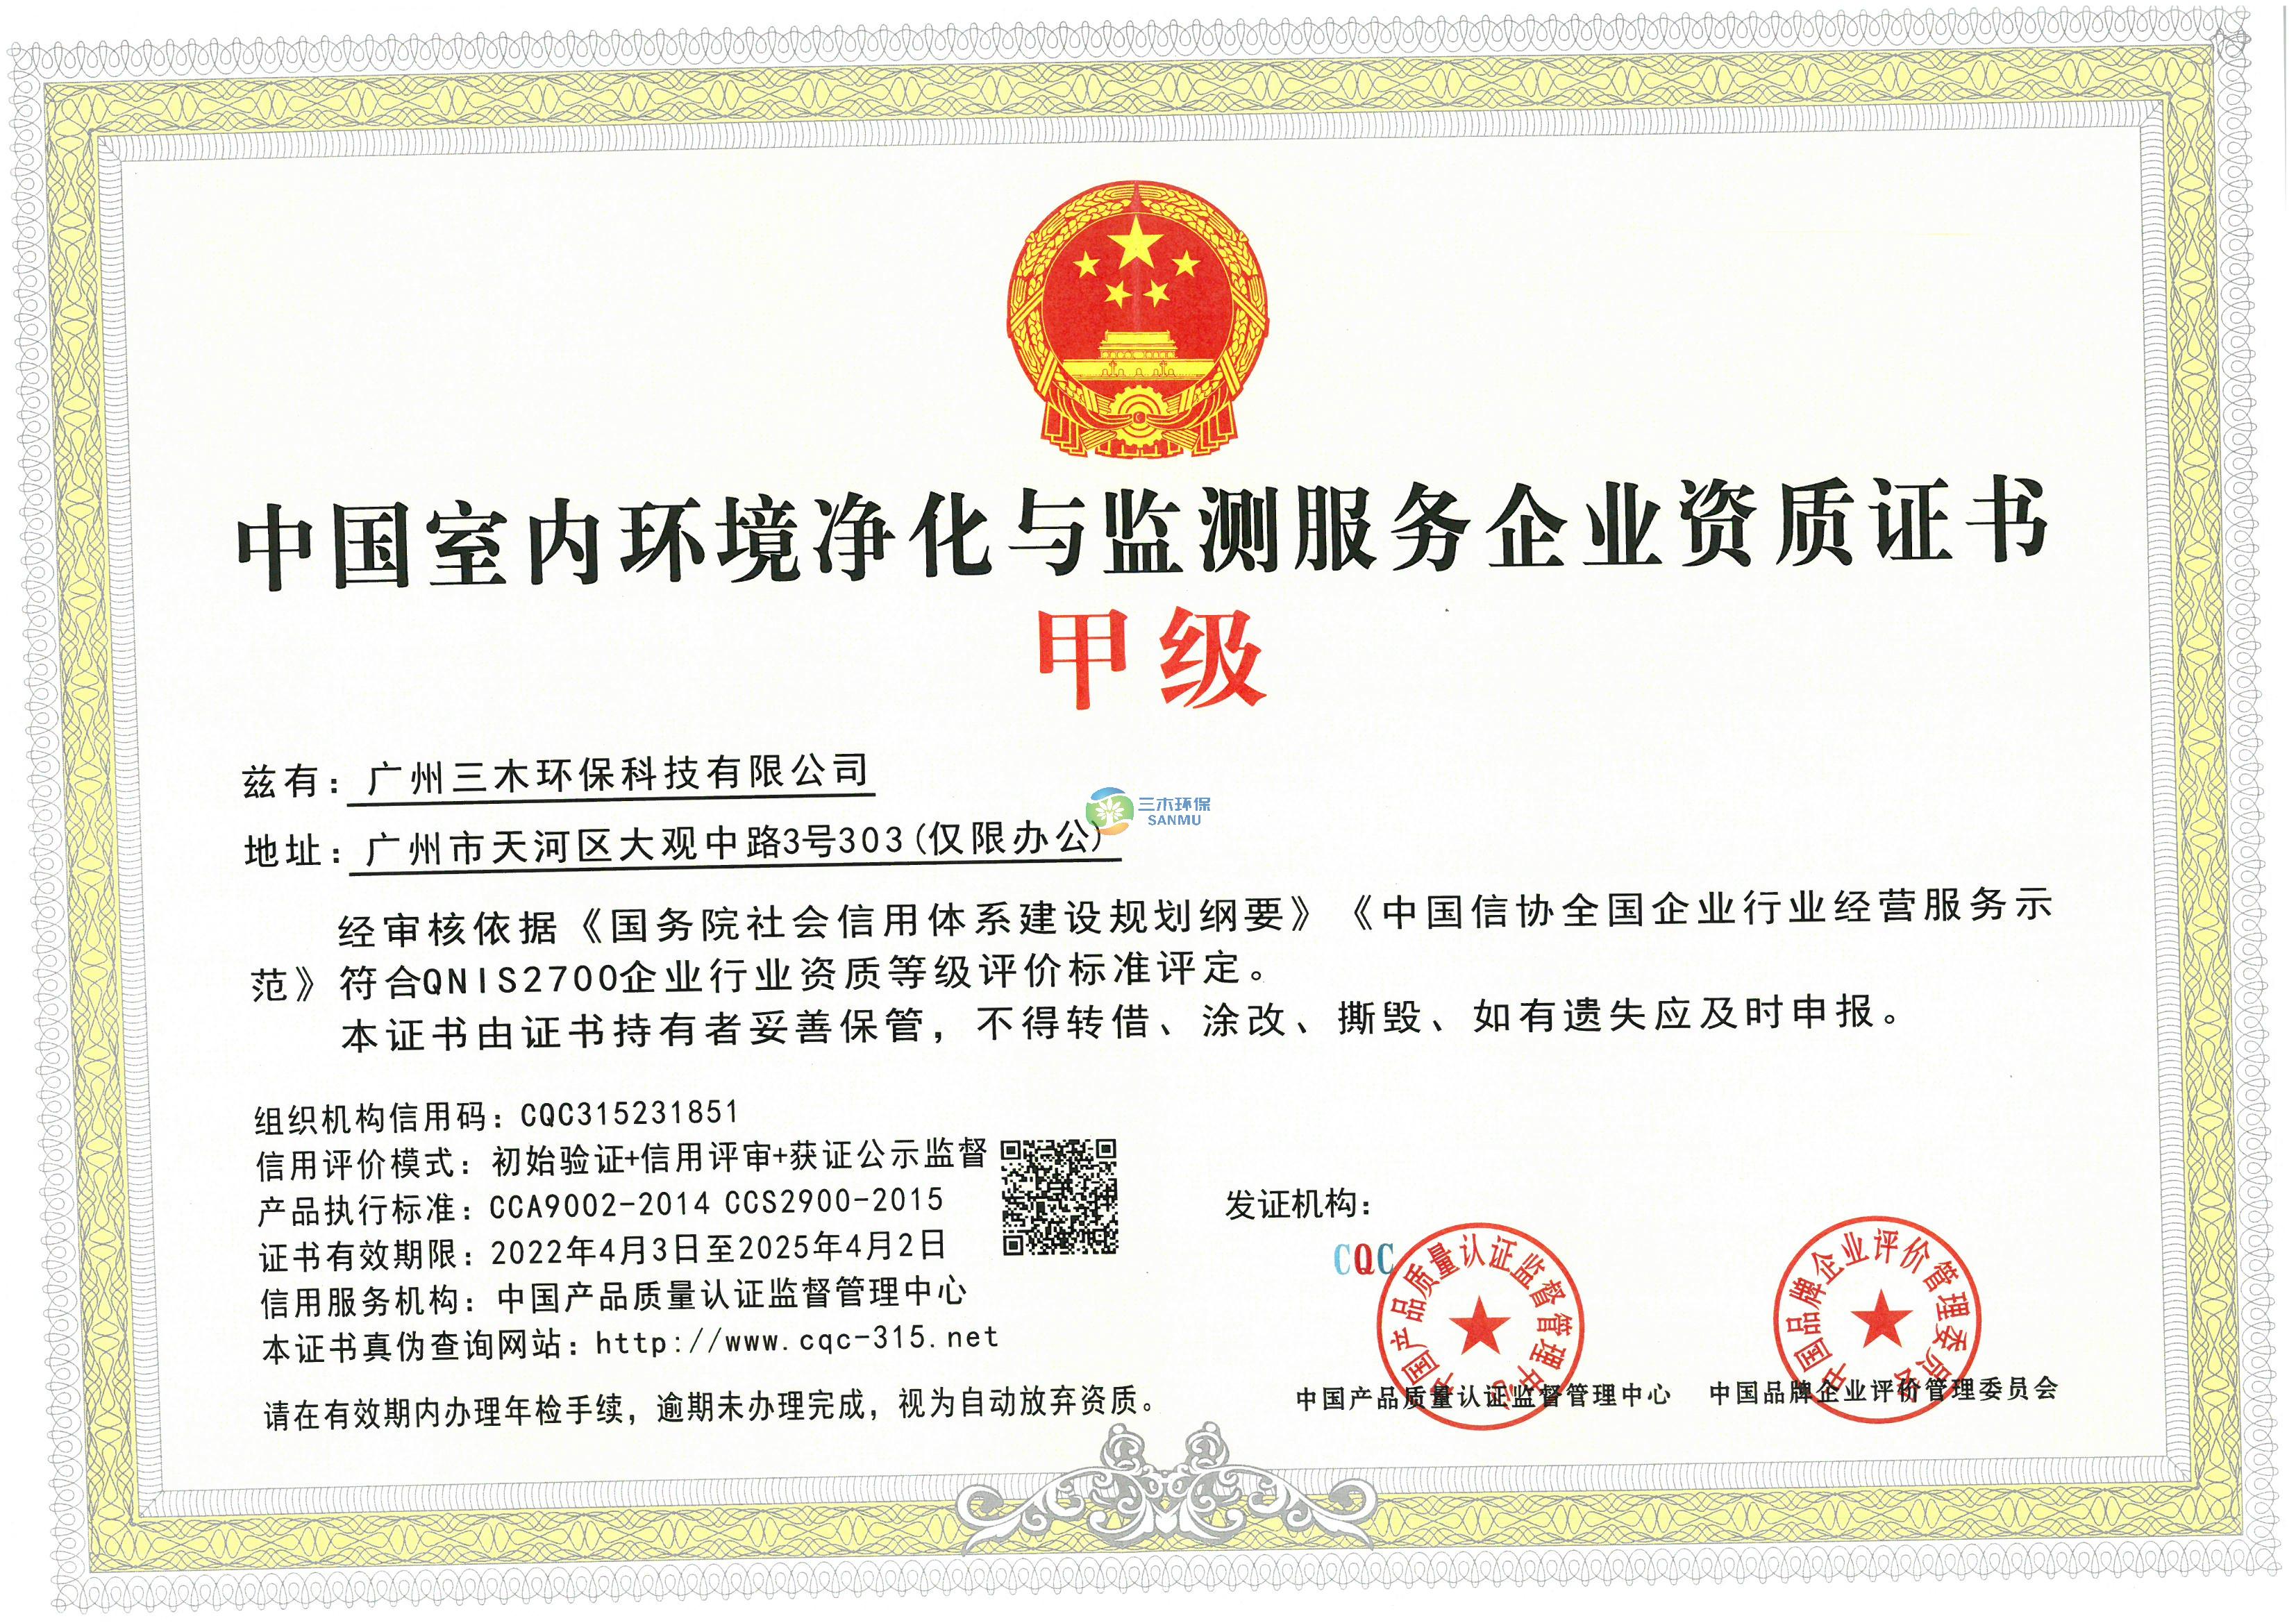 中国室内环境净化与检测服务企业资质证书-甲级